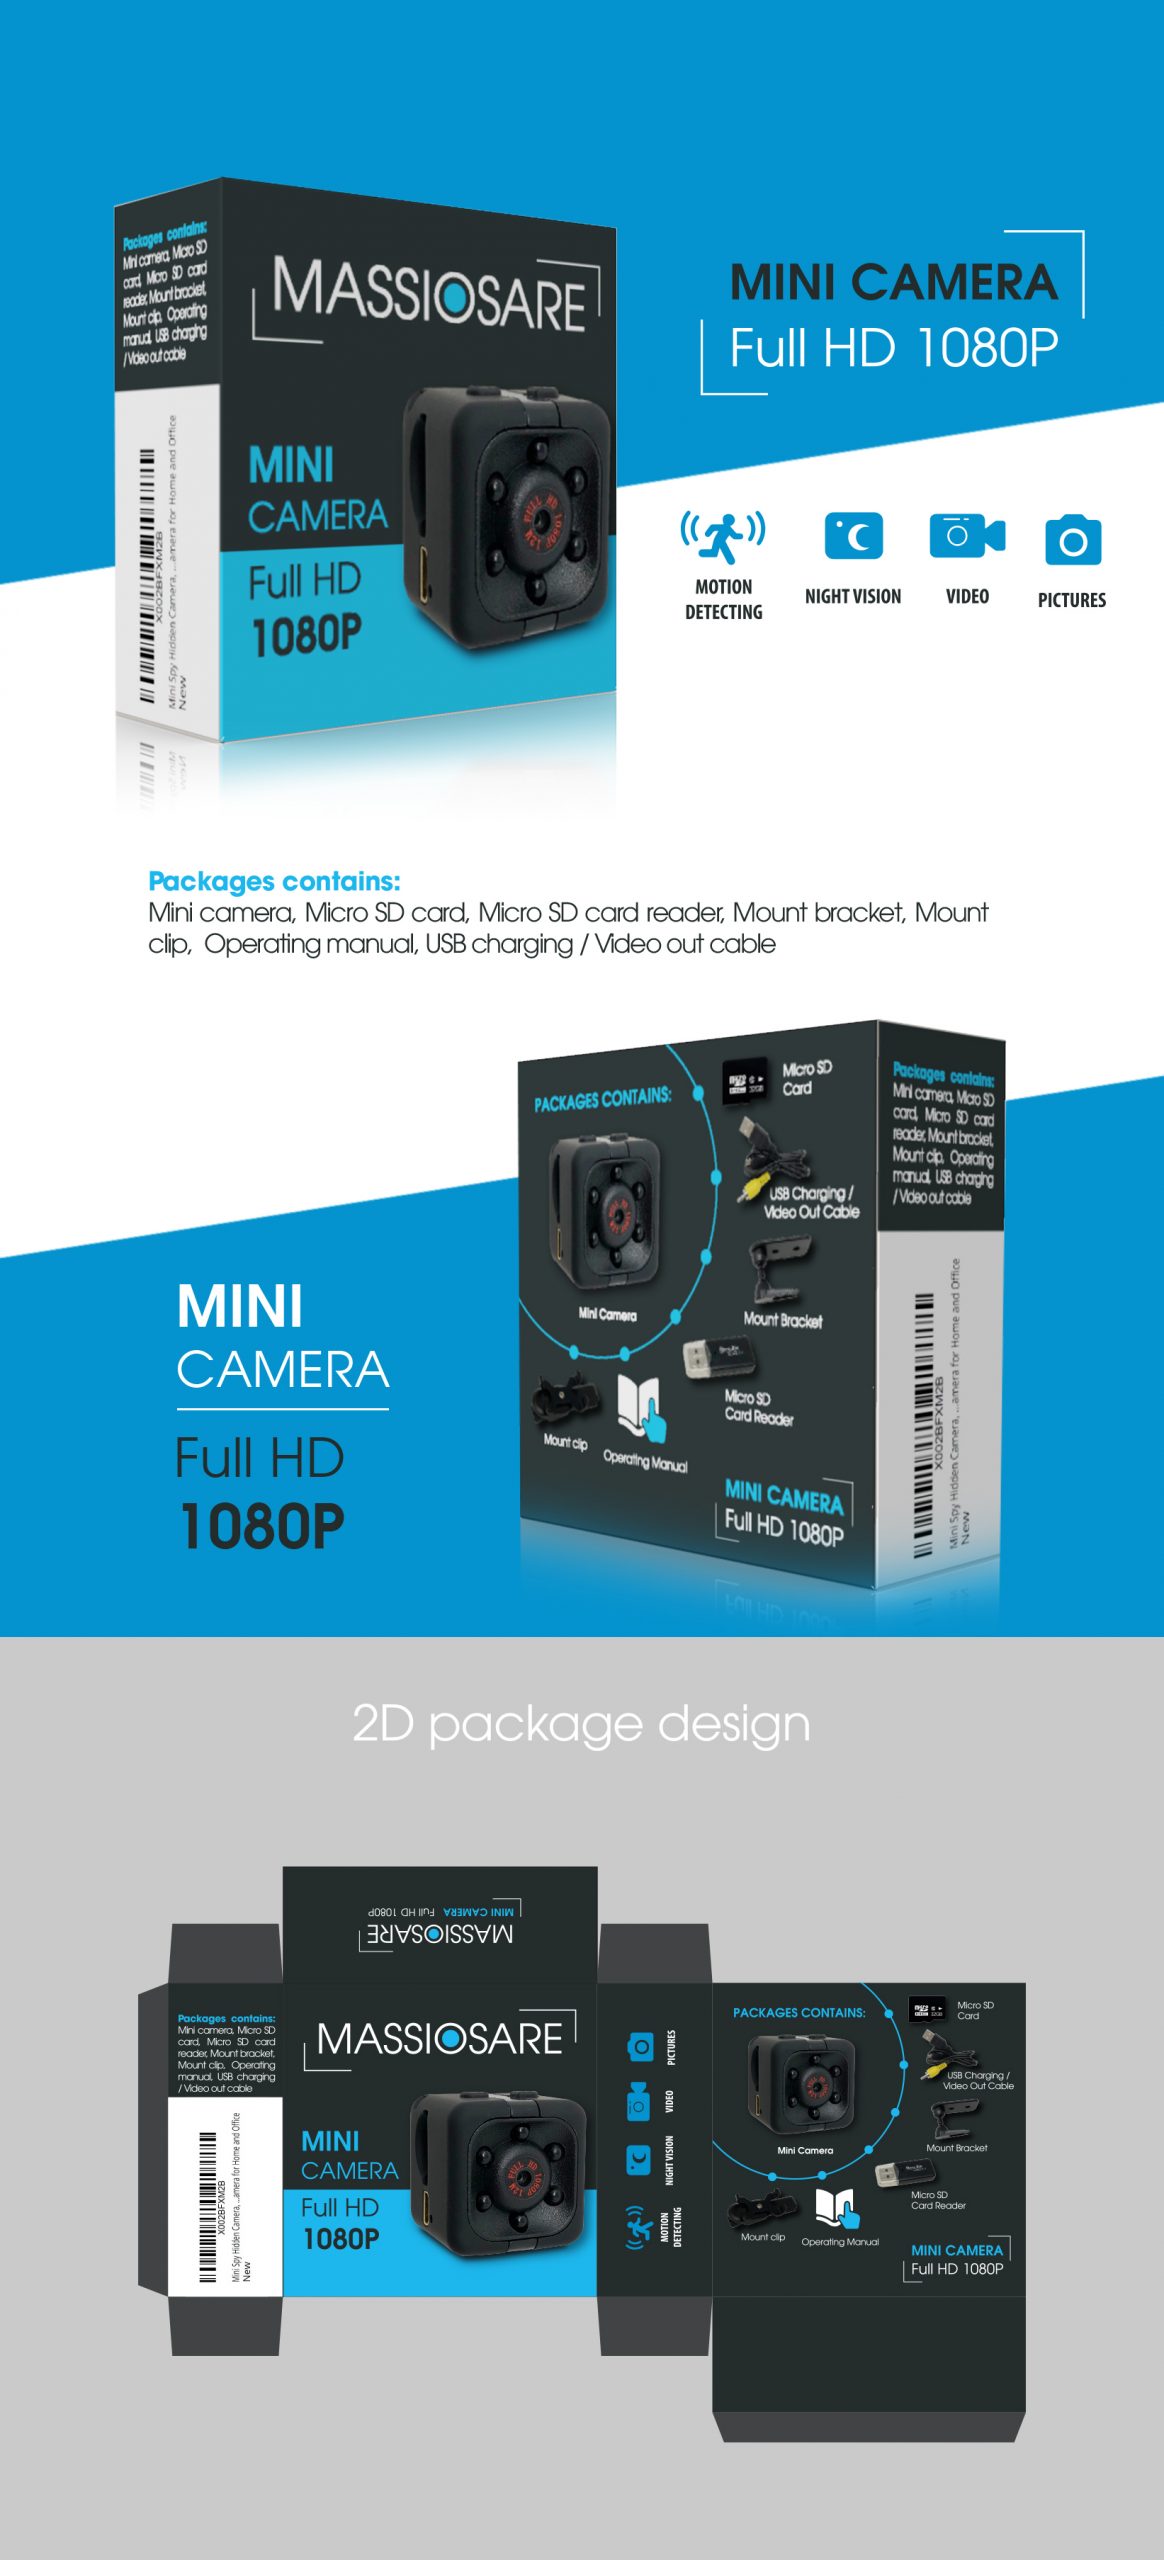 Package Massiosare Mini Camera